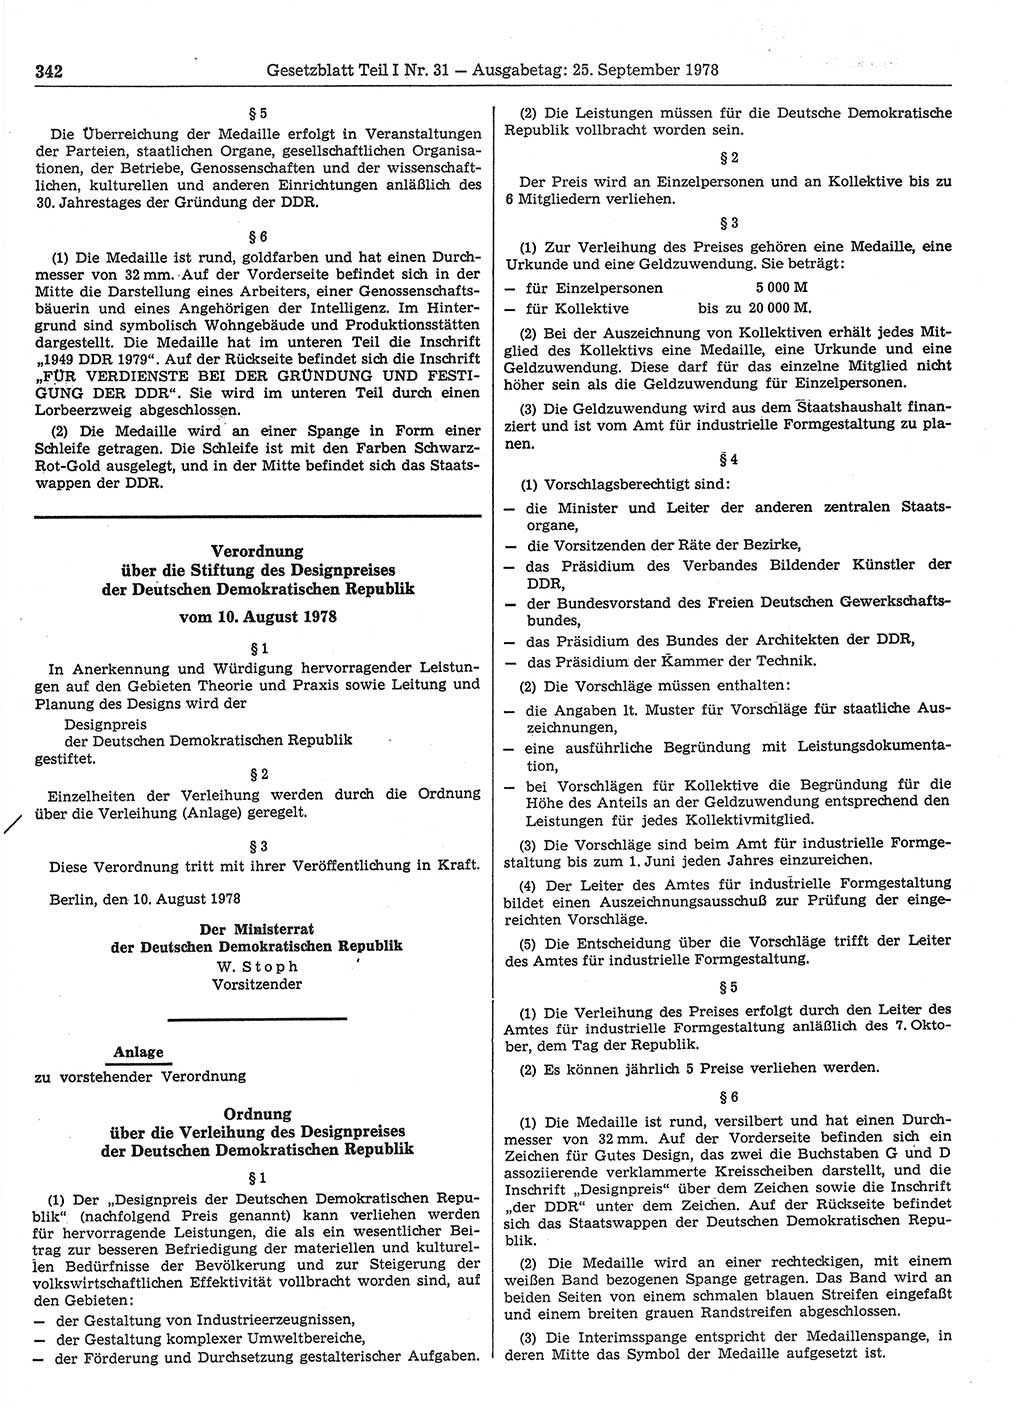 Gesetzblatt (GBl.) der Deutschen Demokratischen Republik (DDR) Teil Ⅰ 1978, Seite 342 (GBl. DDR Ⅰ 1978, S. 342)